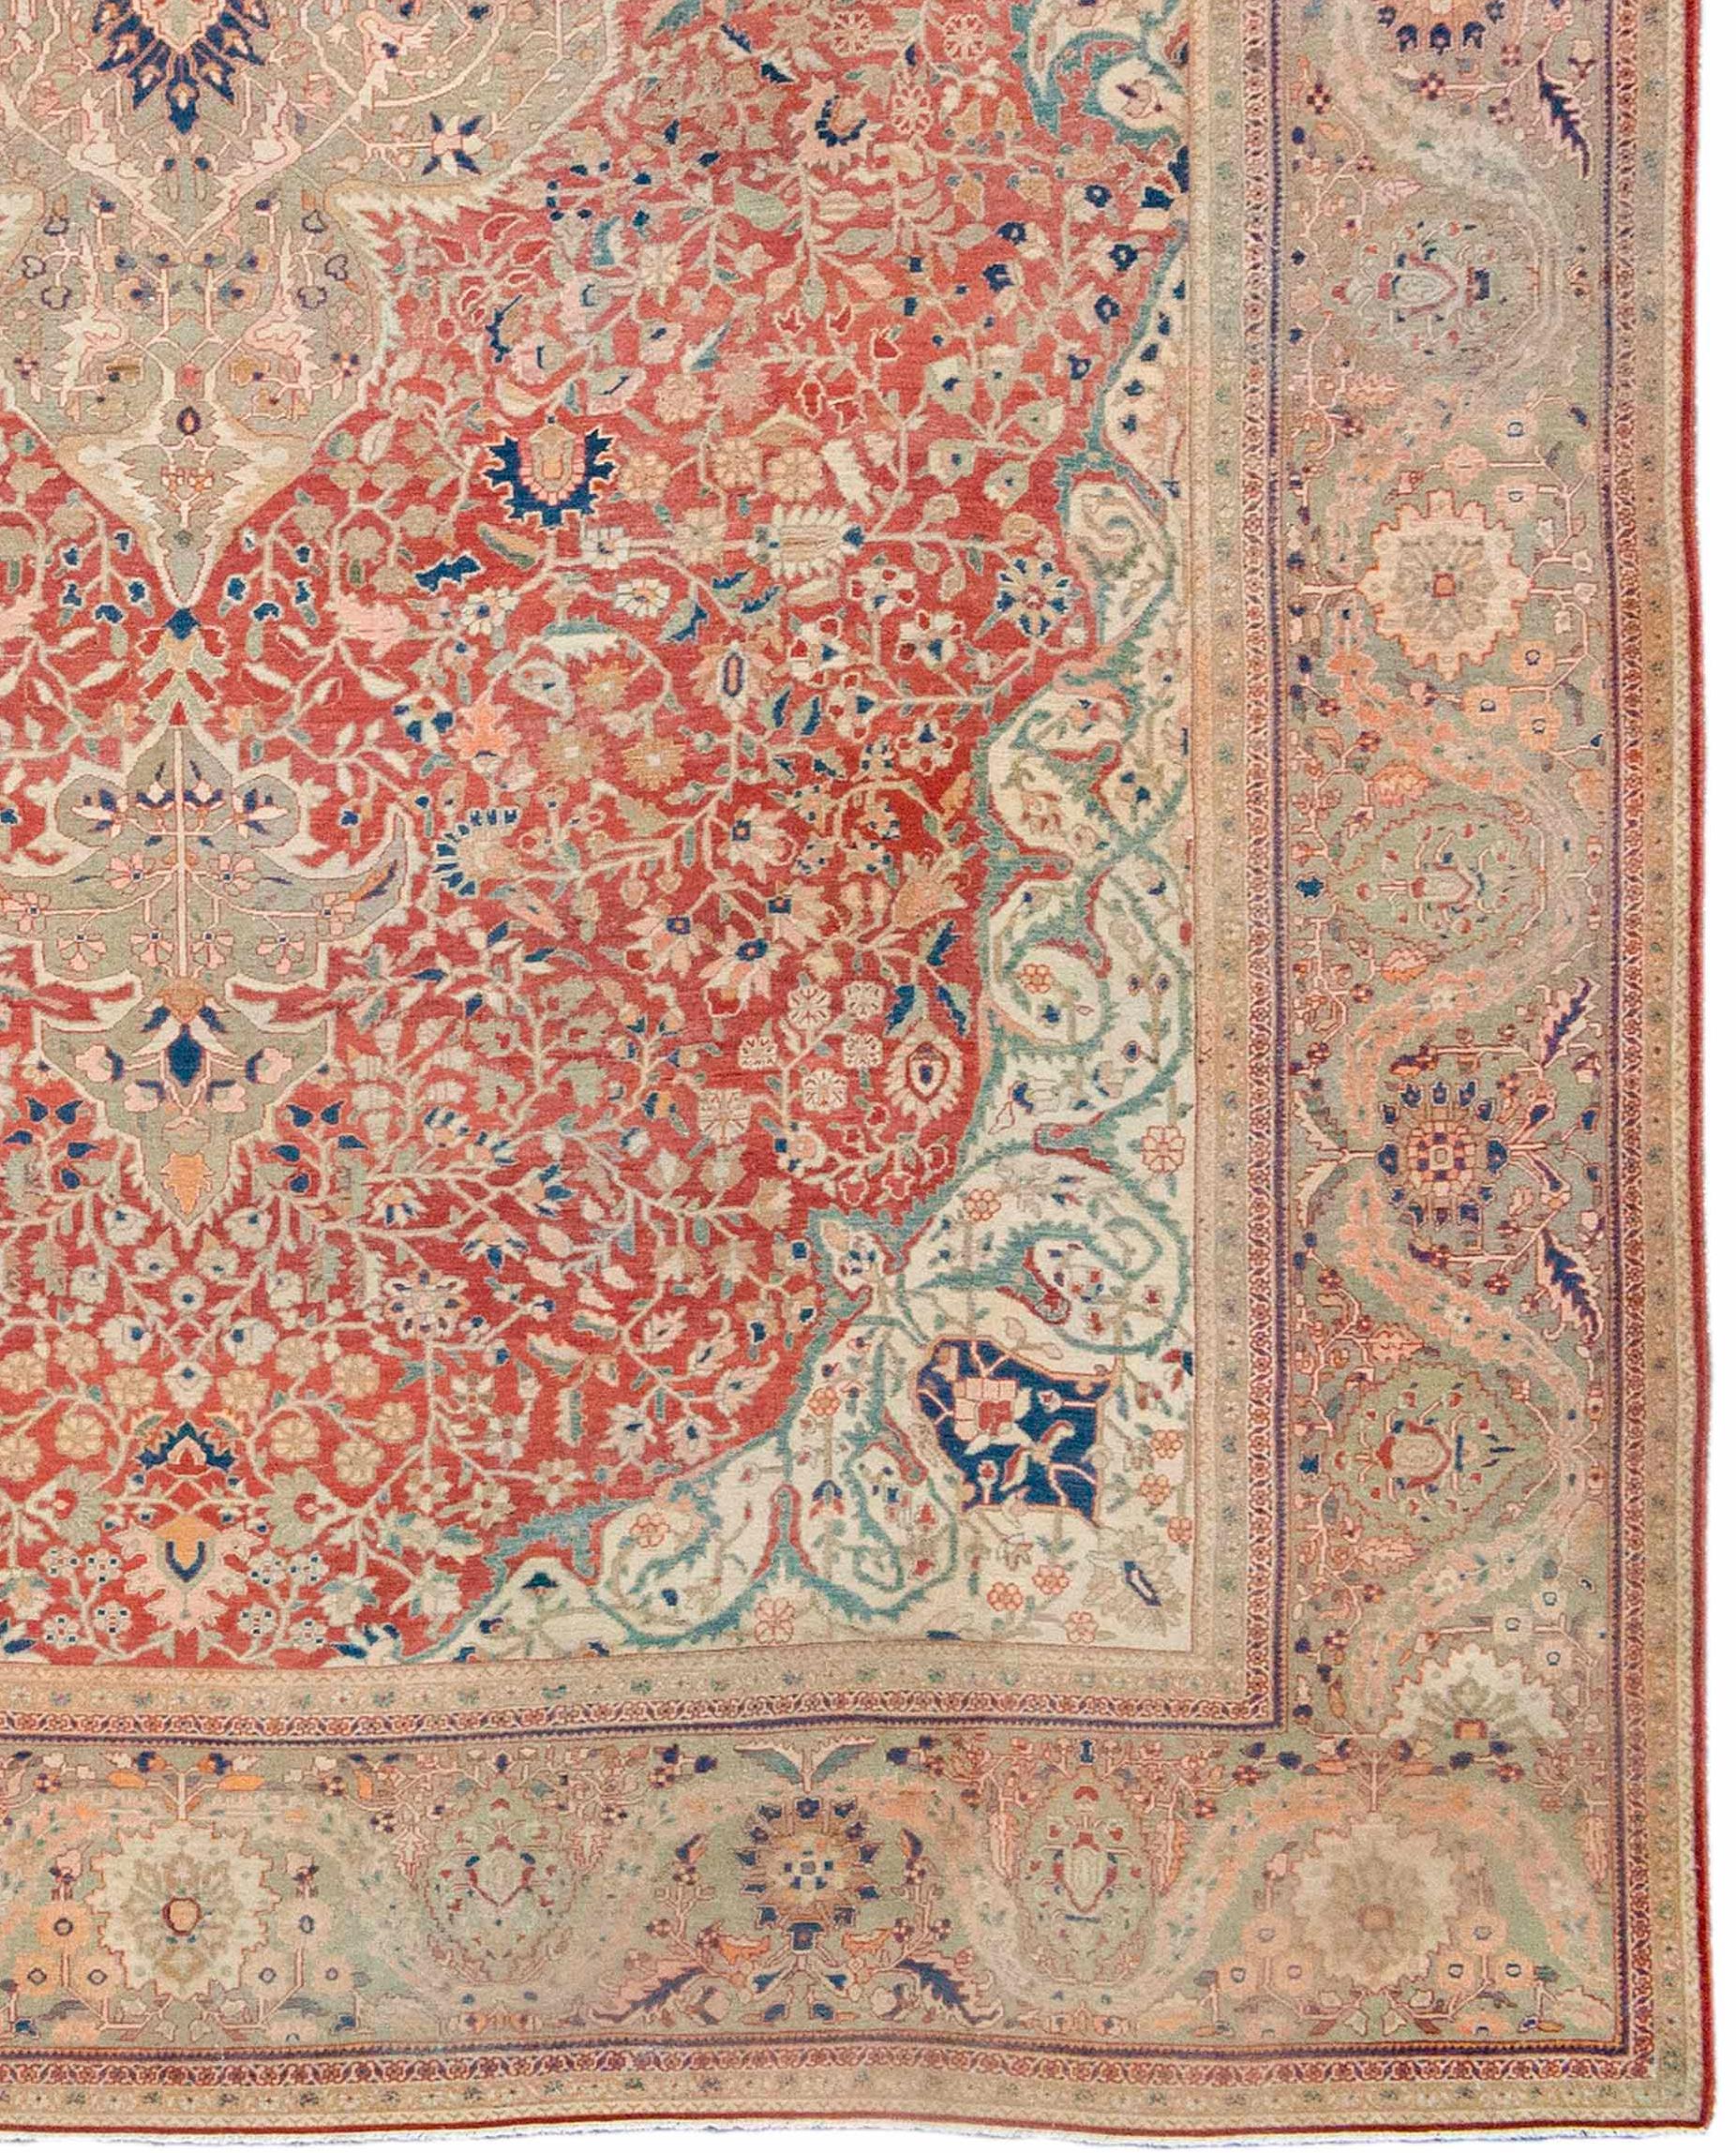 Persian Fereghan Sarouk carpet. Measures: 11'7